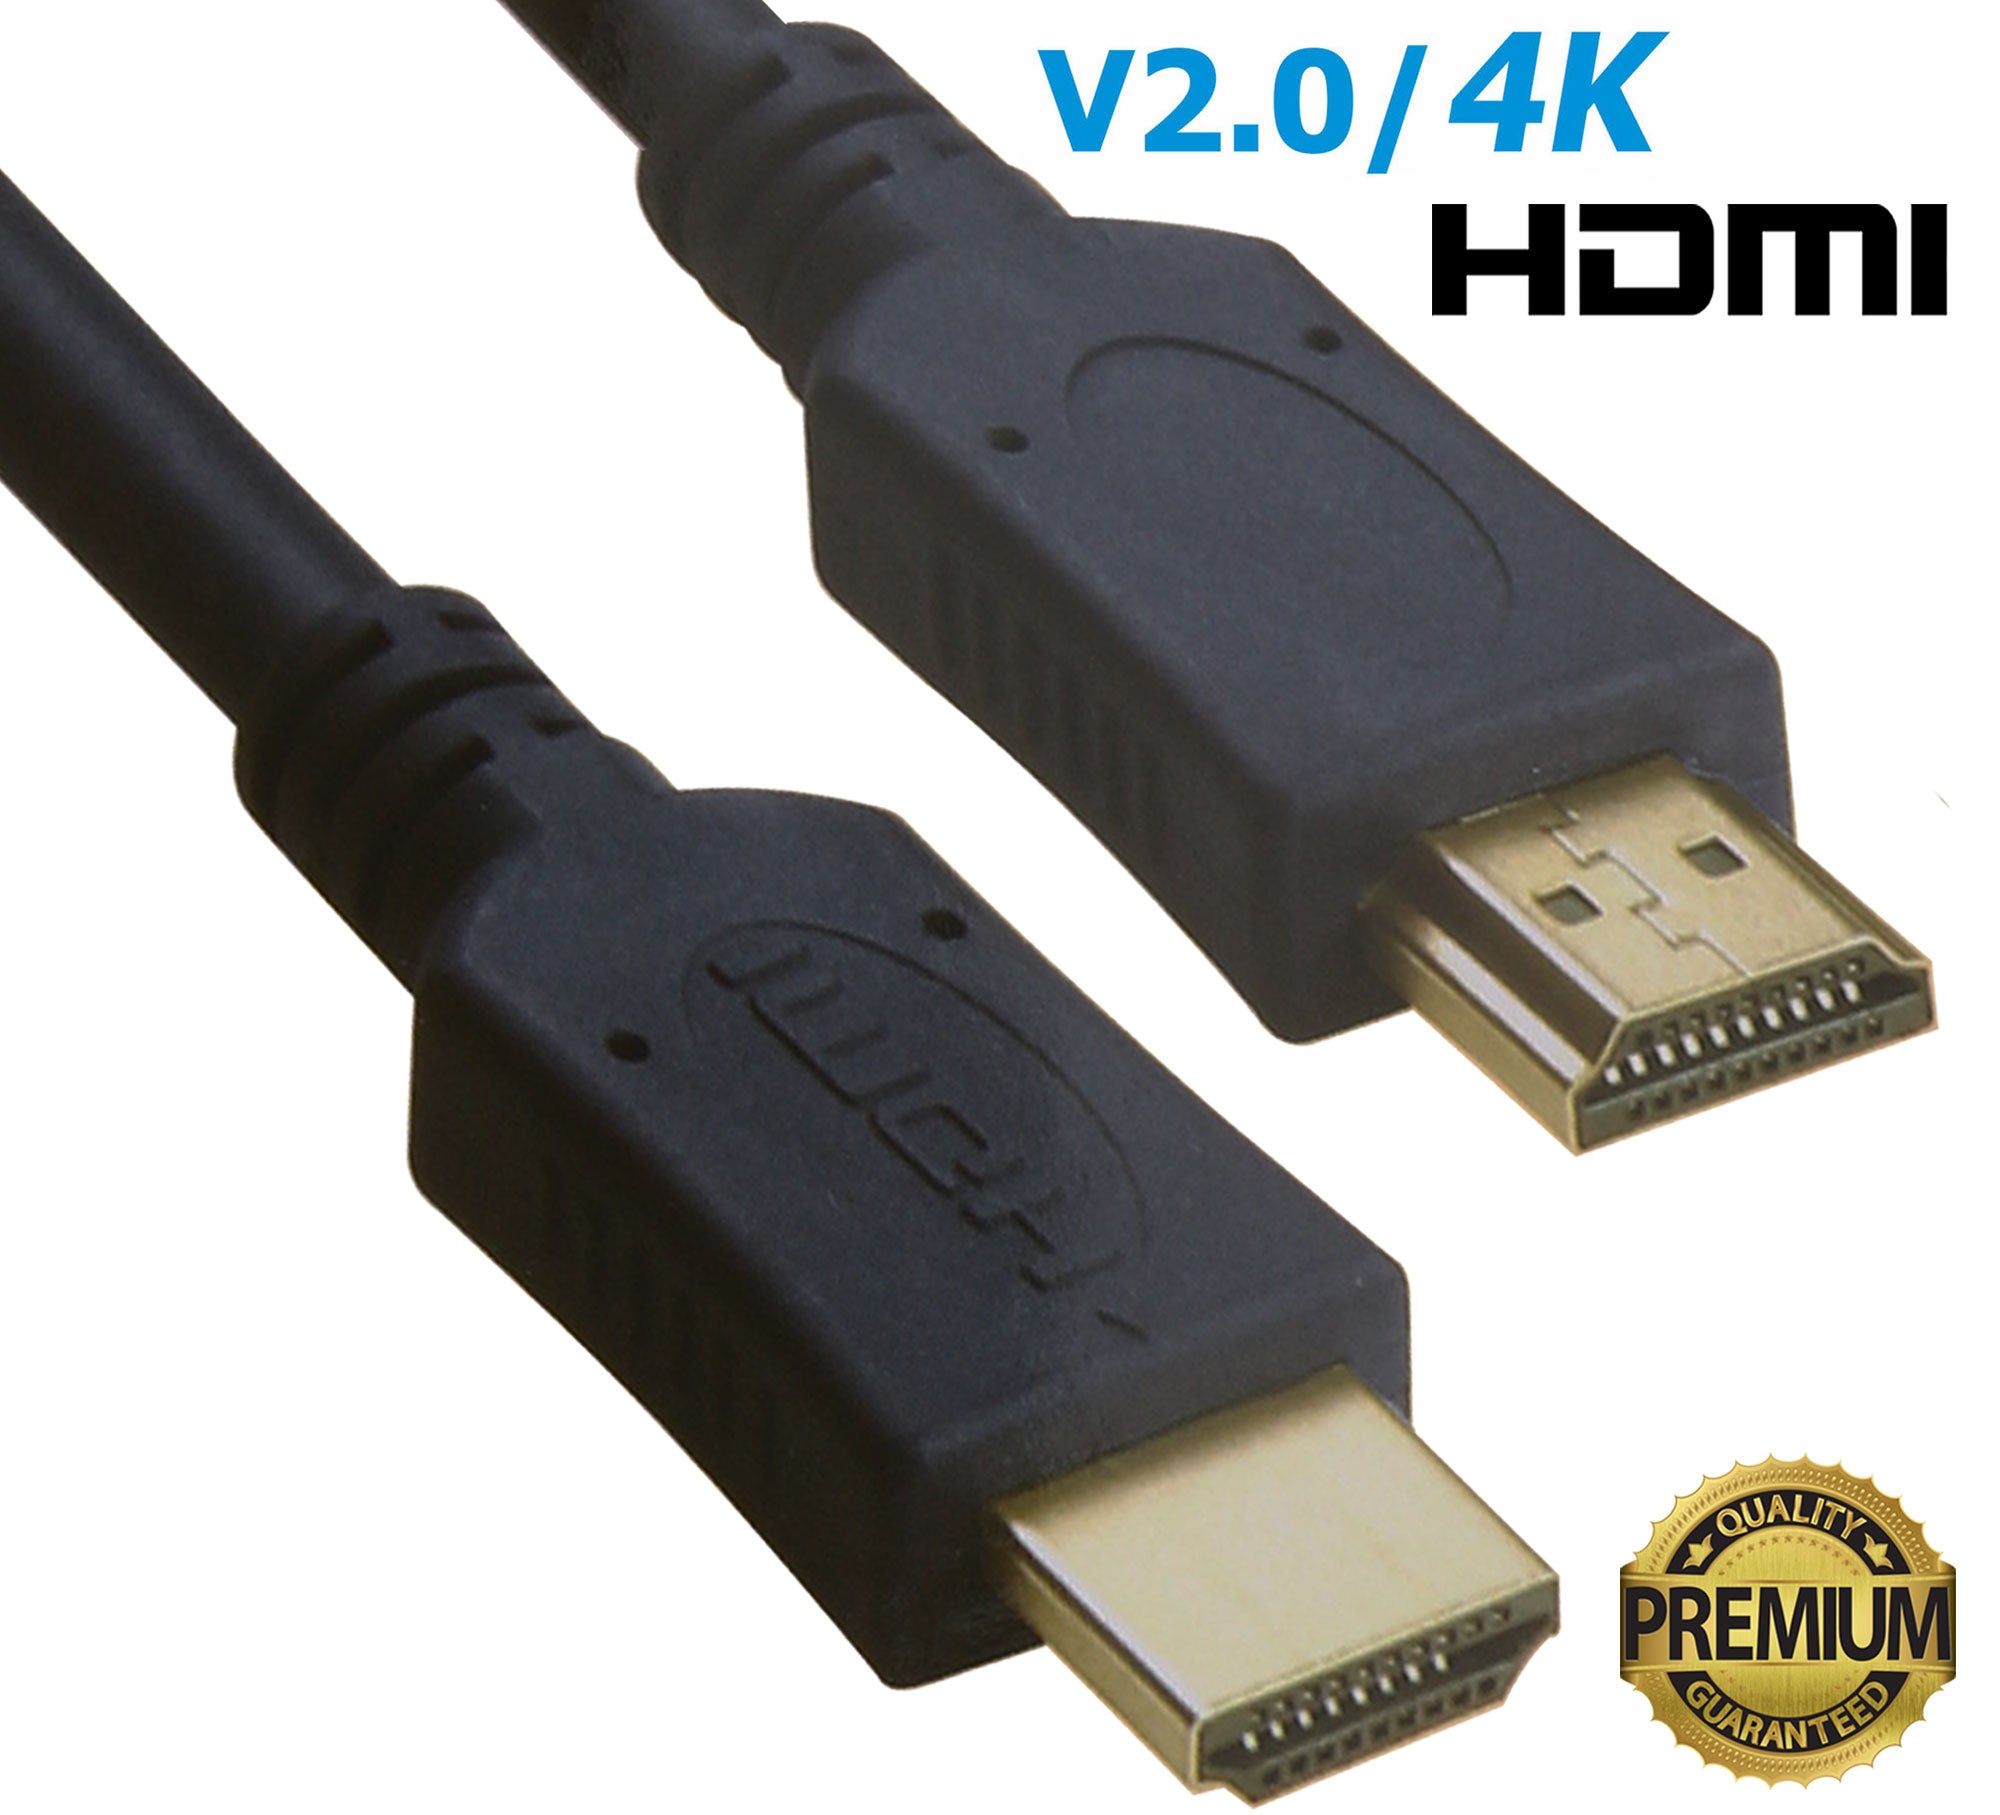 Câble HDMI 4K et 8K v2.1 - 1.8m